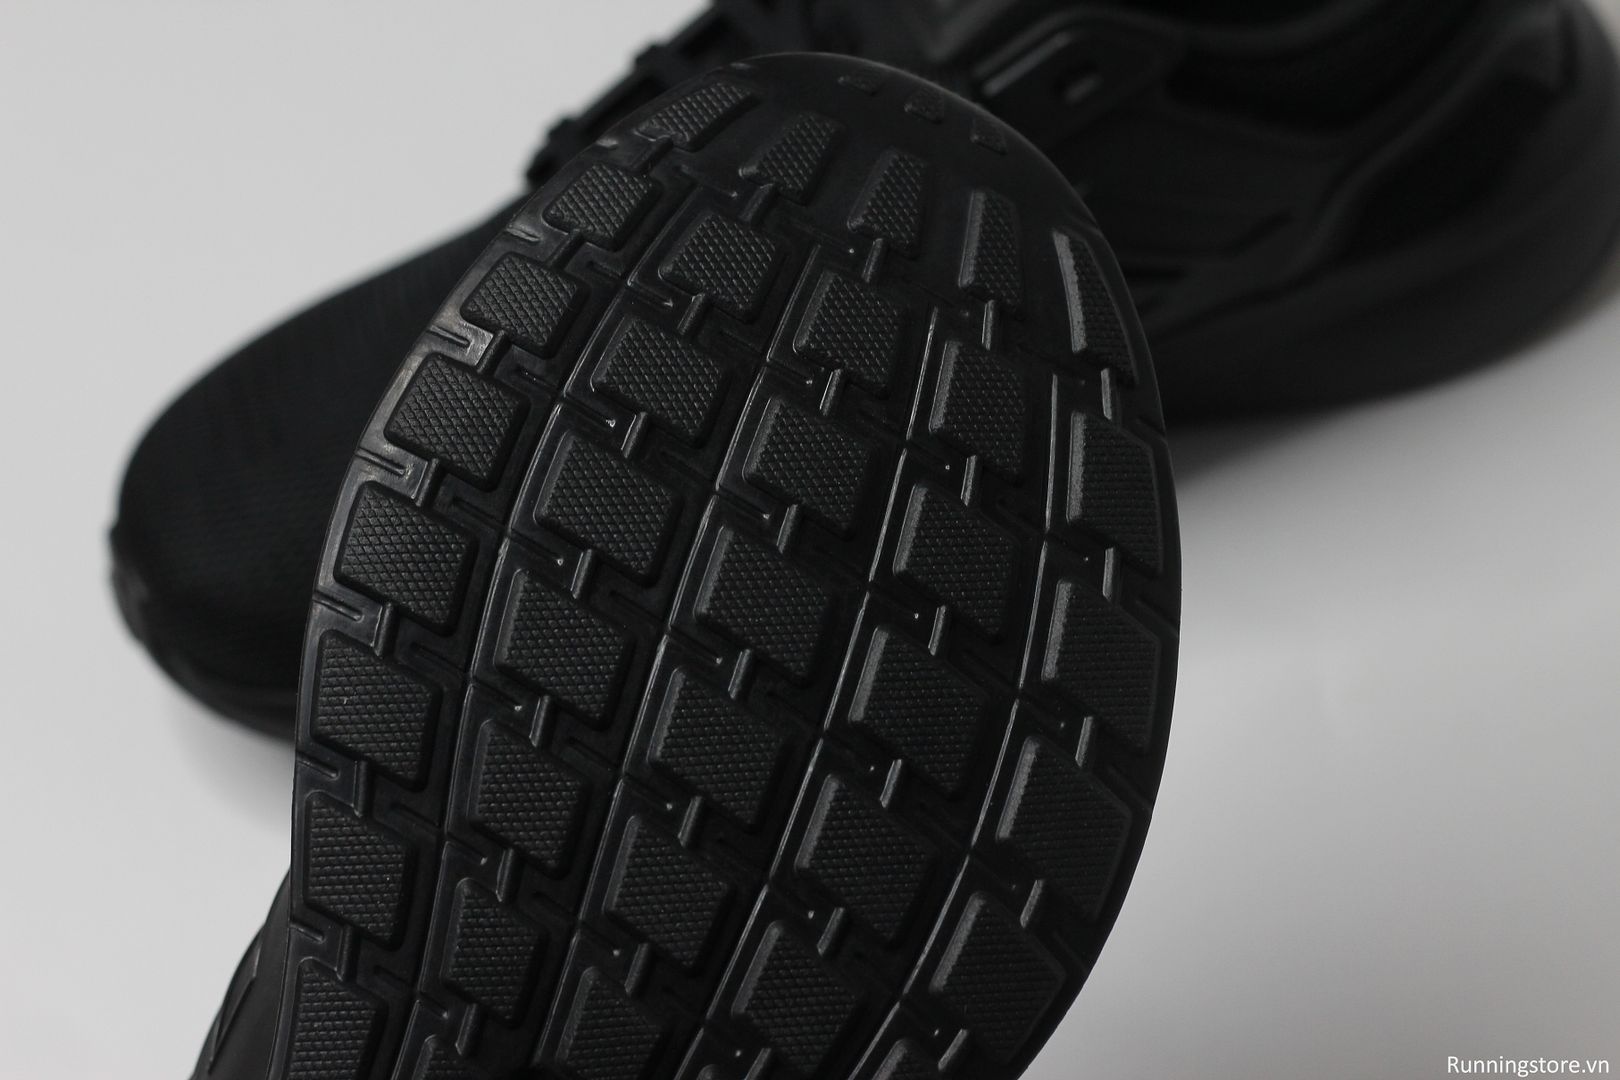 Giày chạy bộ Adidas EQ19 màu đen GV7373